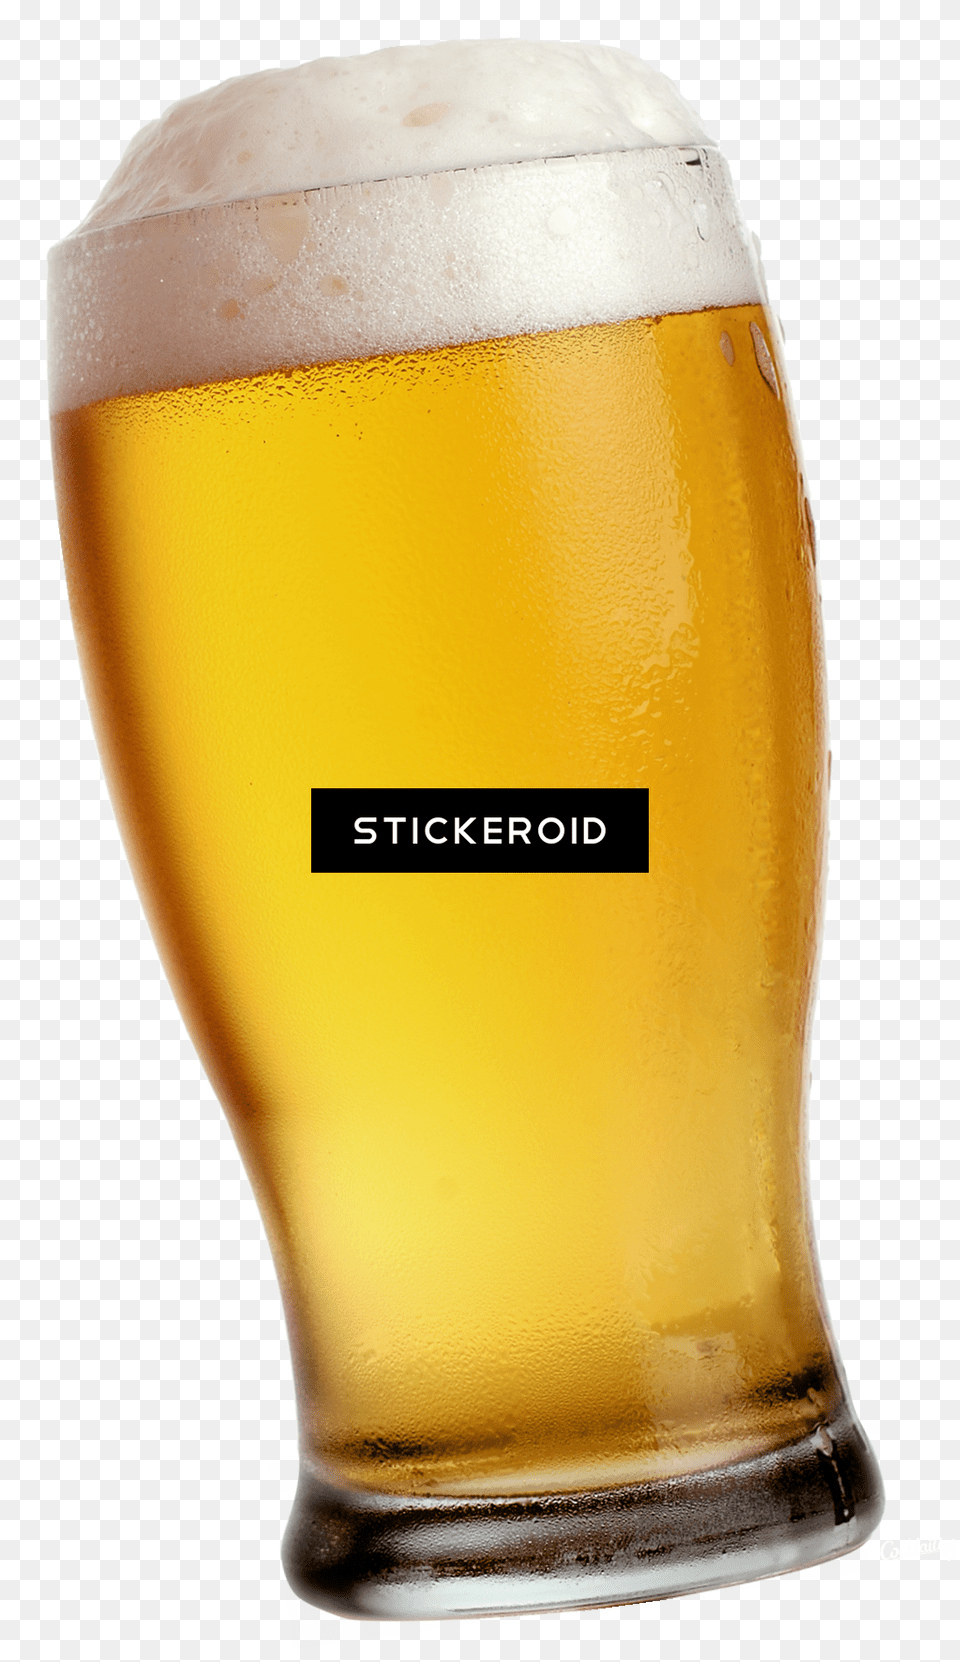 Goblet Beer, Alcohol, Beer Glass, Beverage, Glass Free Png Download